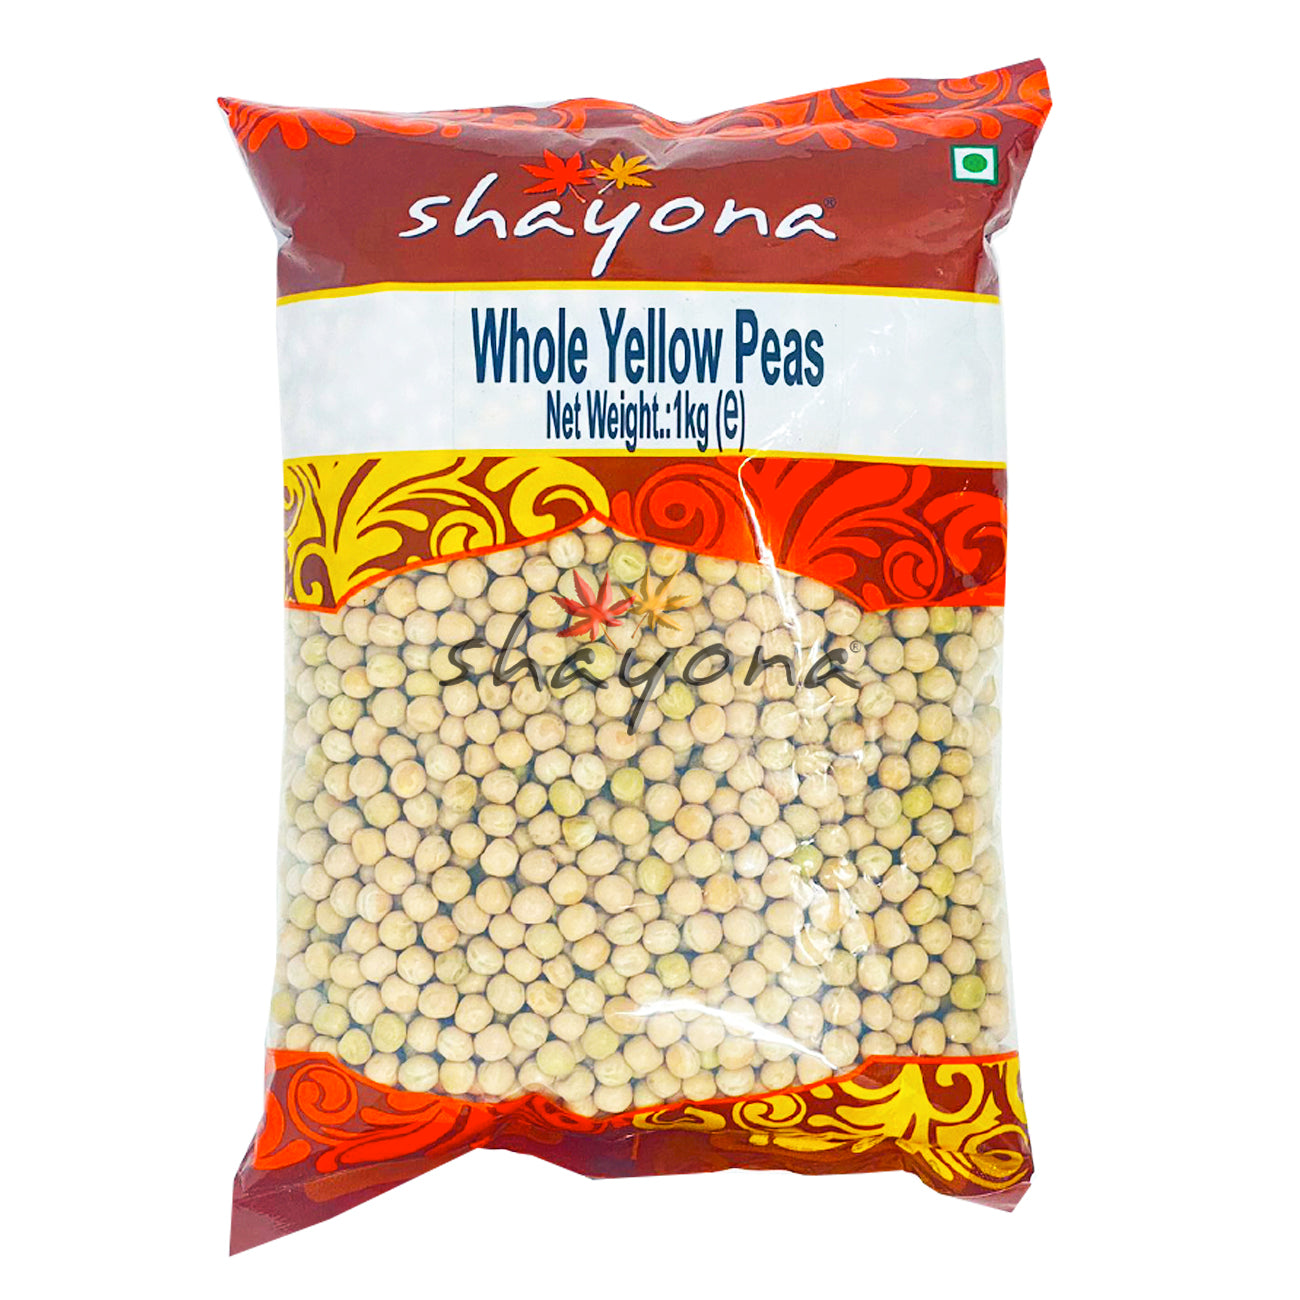 Shayona Whole Yellow Peas